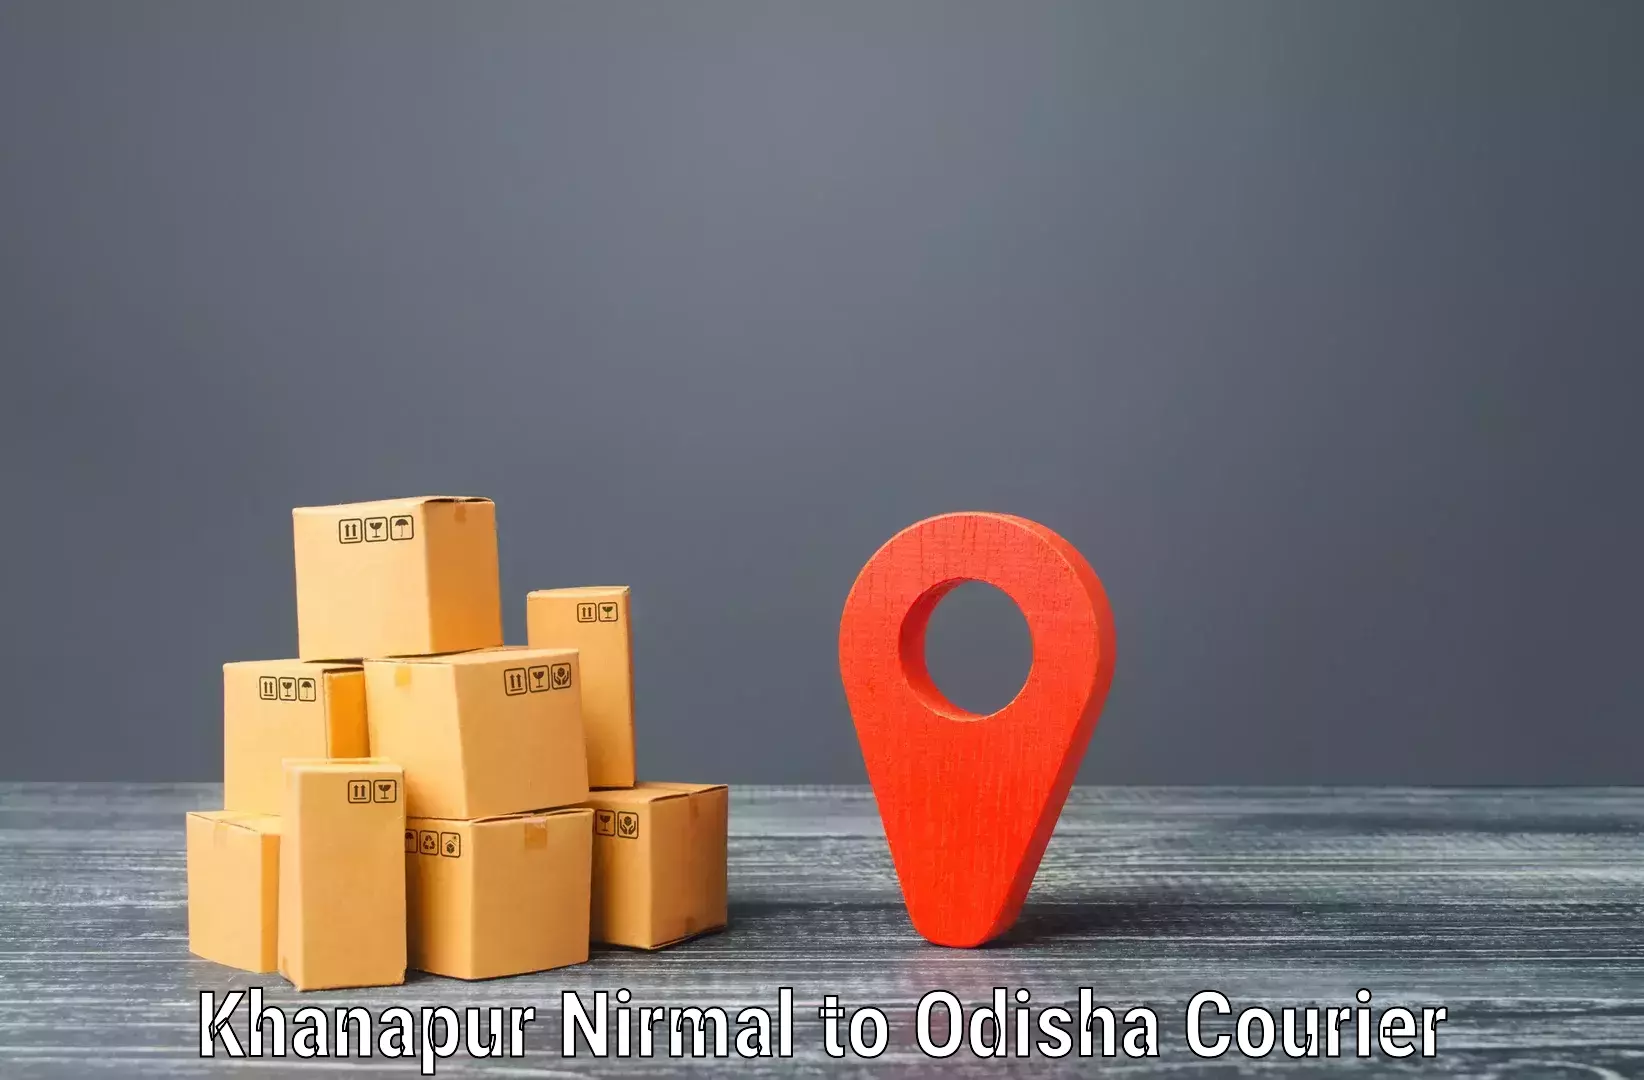 Bulk courier orders Khanapur Nirmal to Paralakhemundi